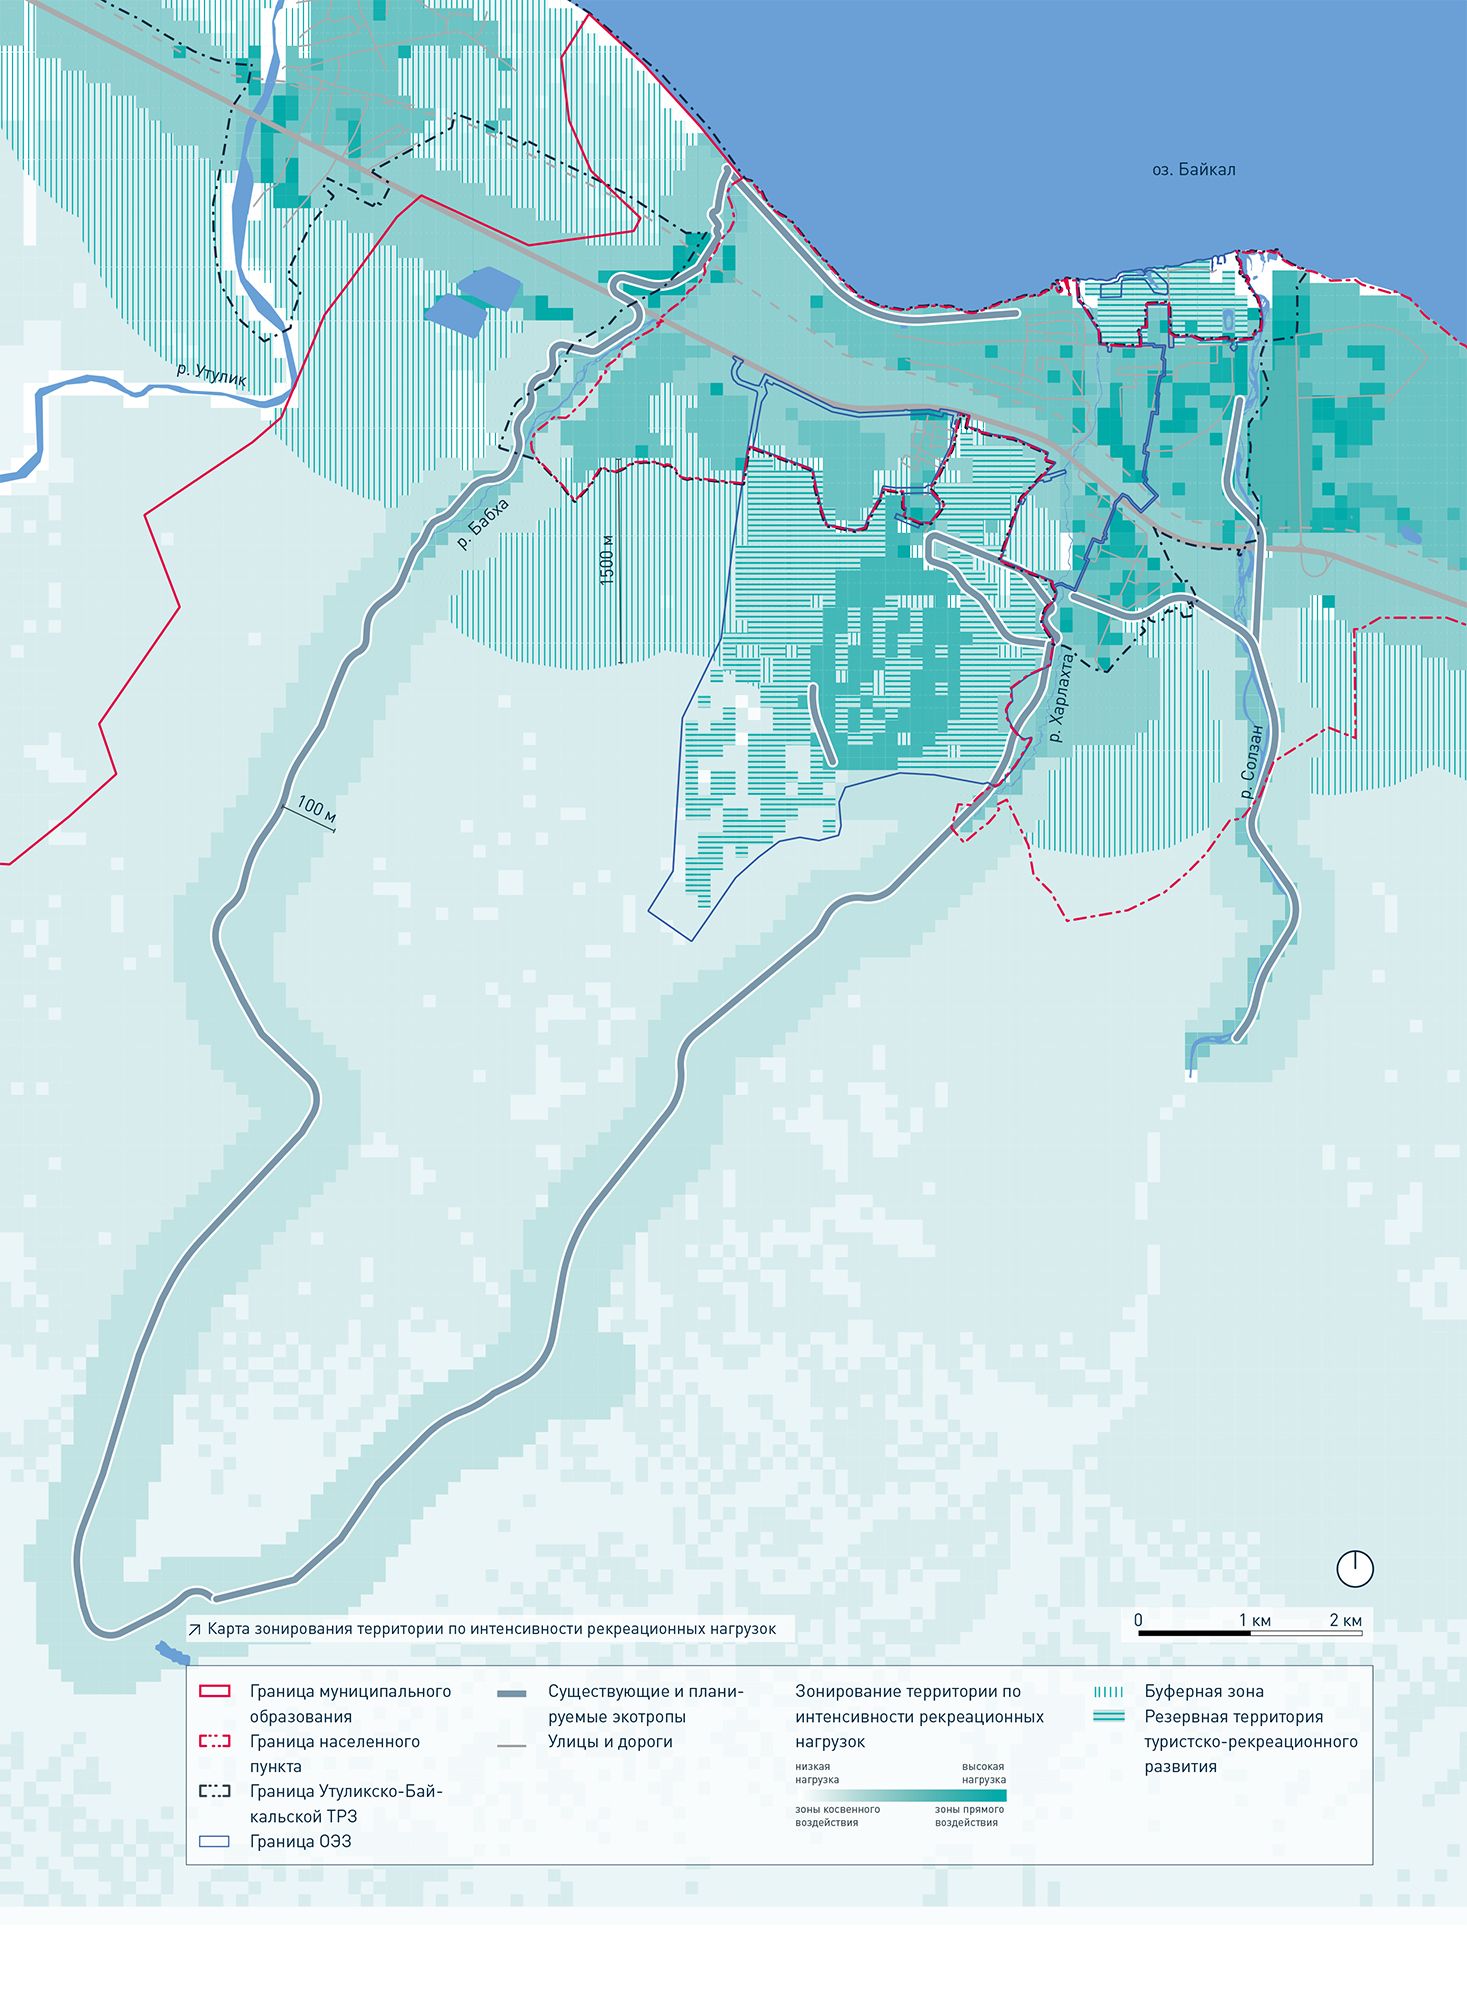  Карта зонирования территории по интенсивности рекреационных нагрузок